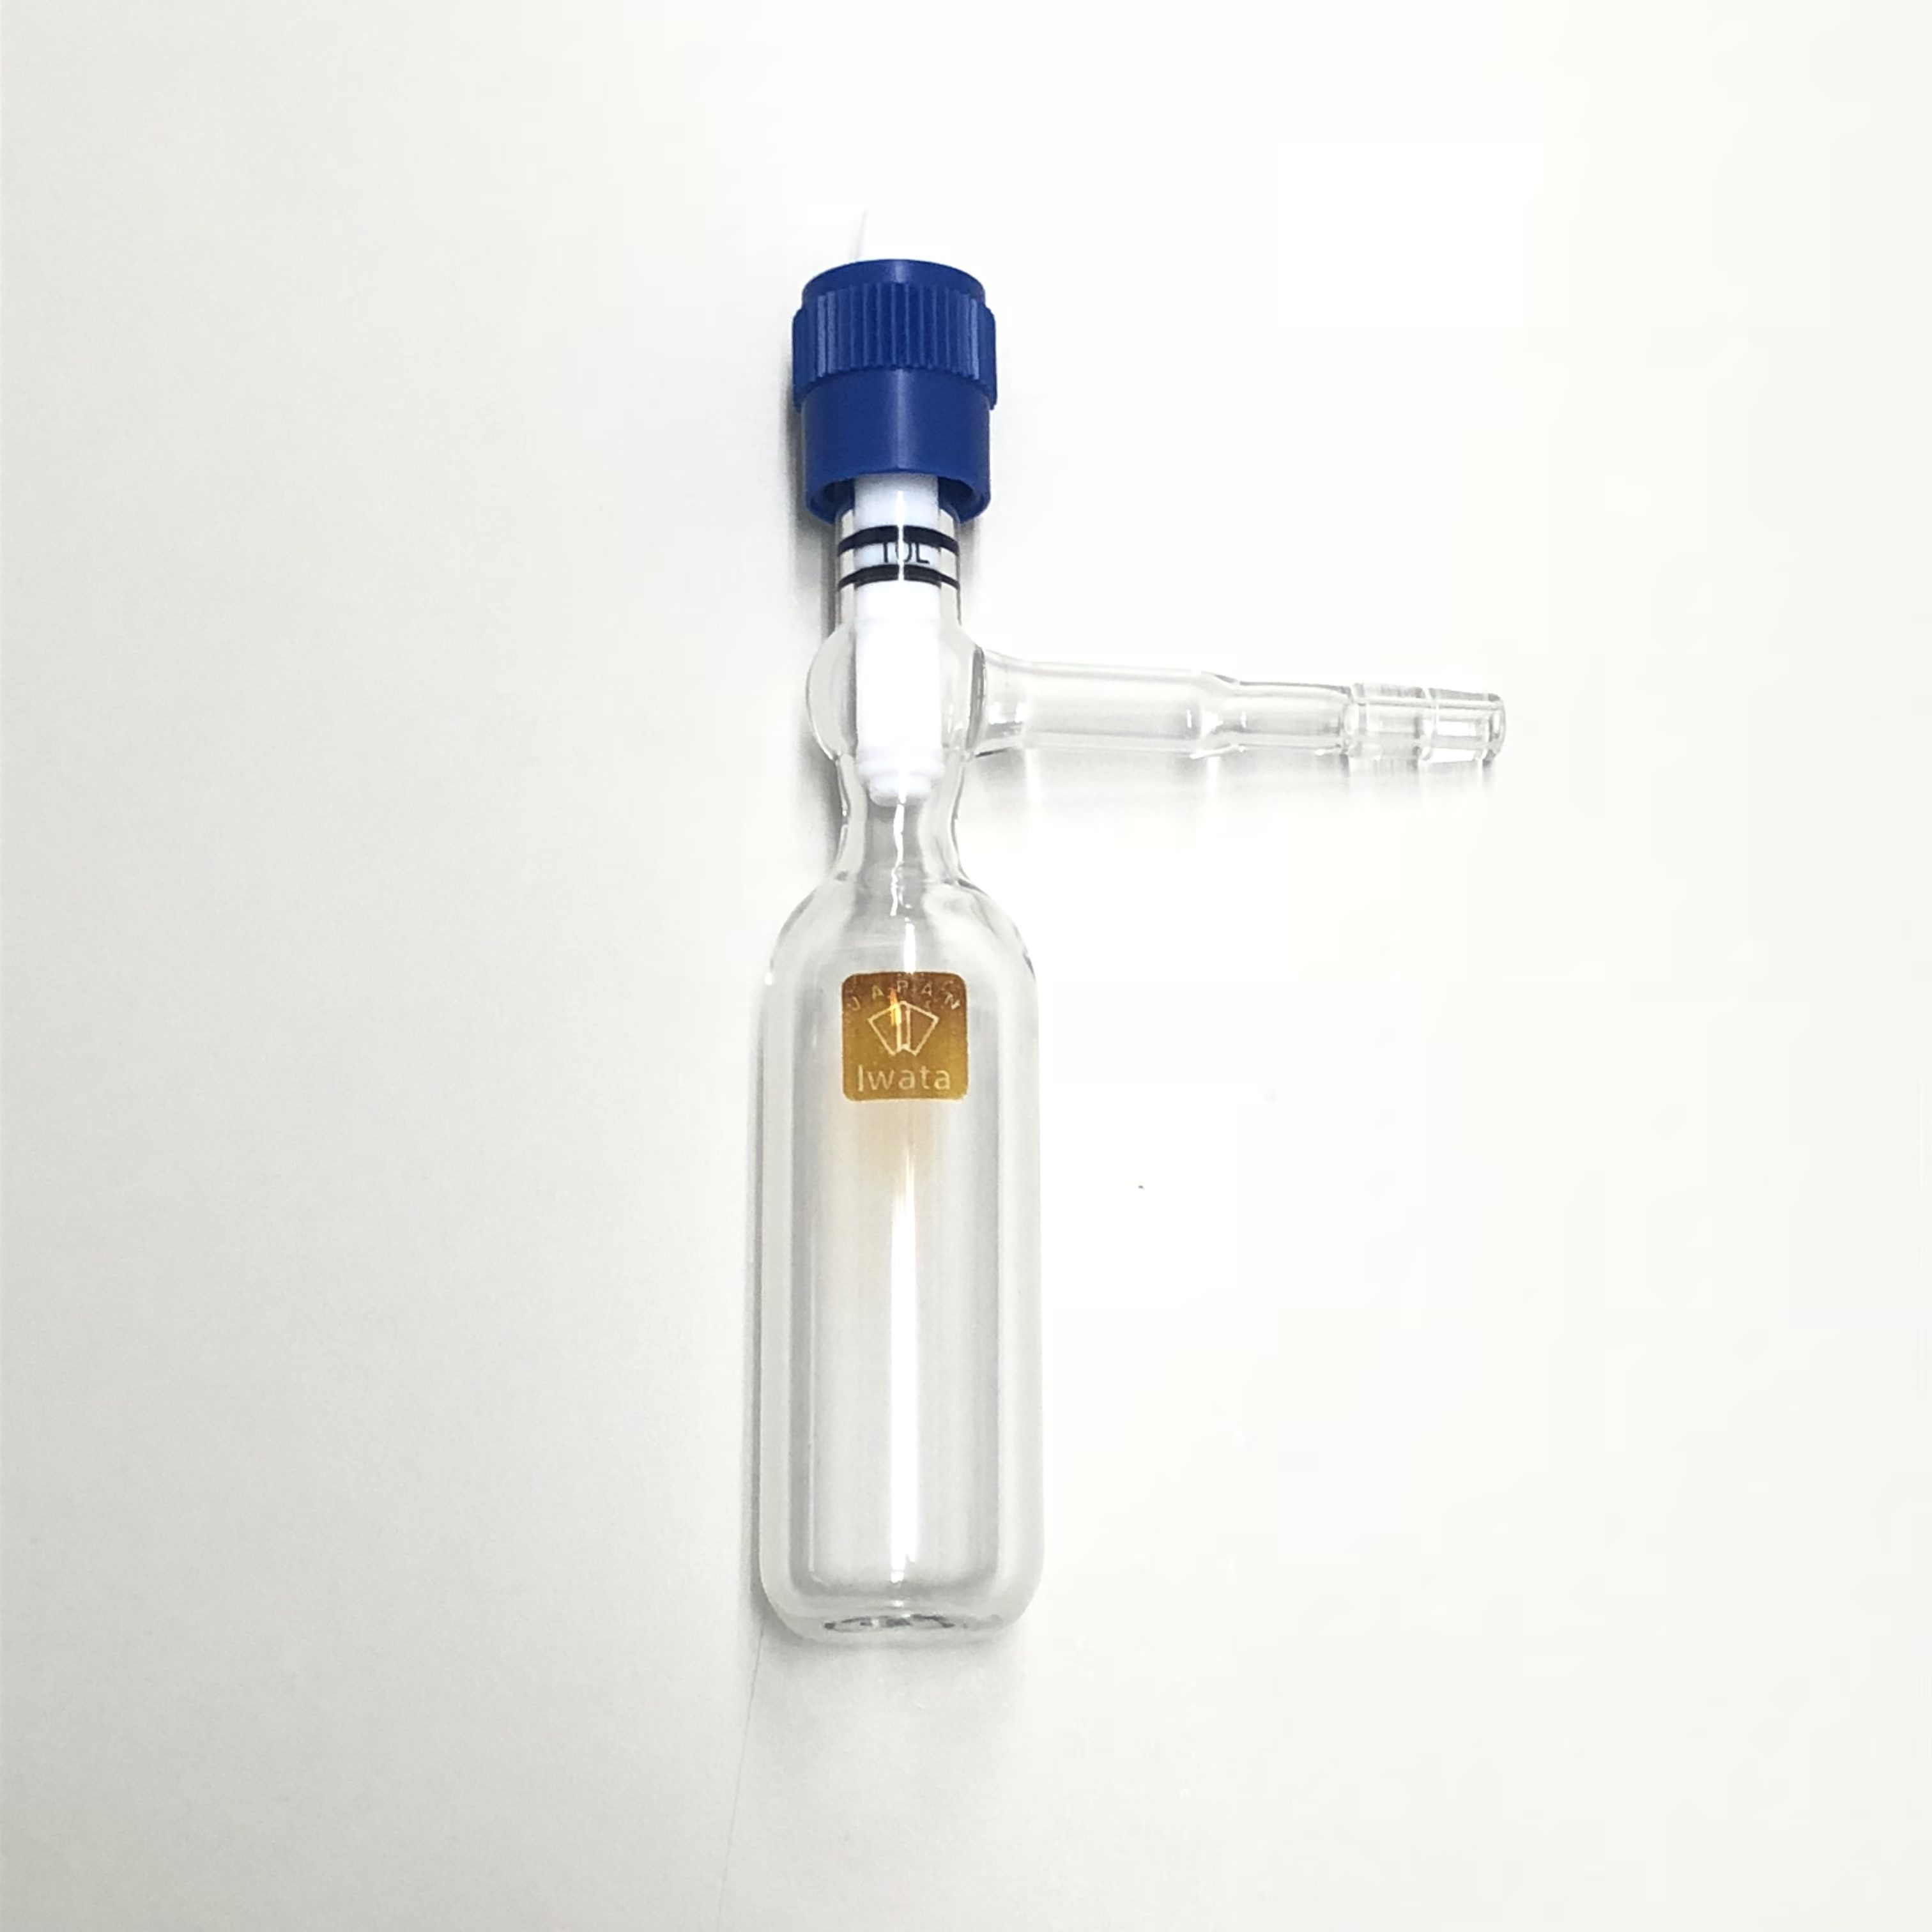 実験用耐熱ガラス「円筒丸底シュレンク管」 | 特注実験用耐熱ガラス 